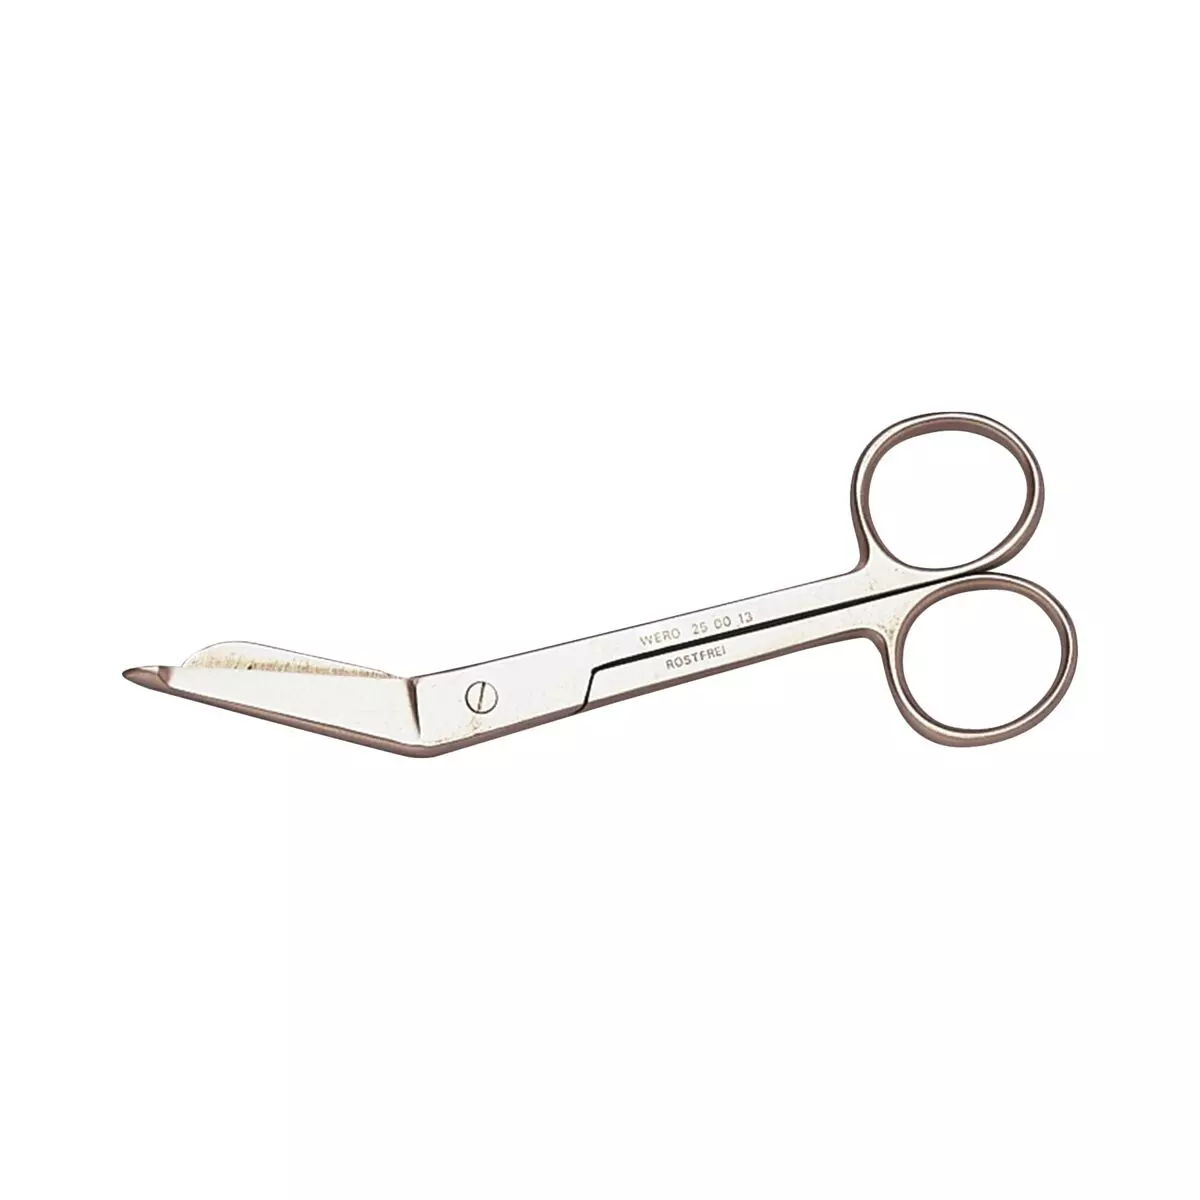 Lister scissors, 14 cm